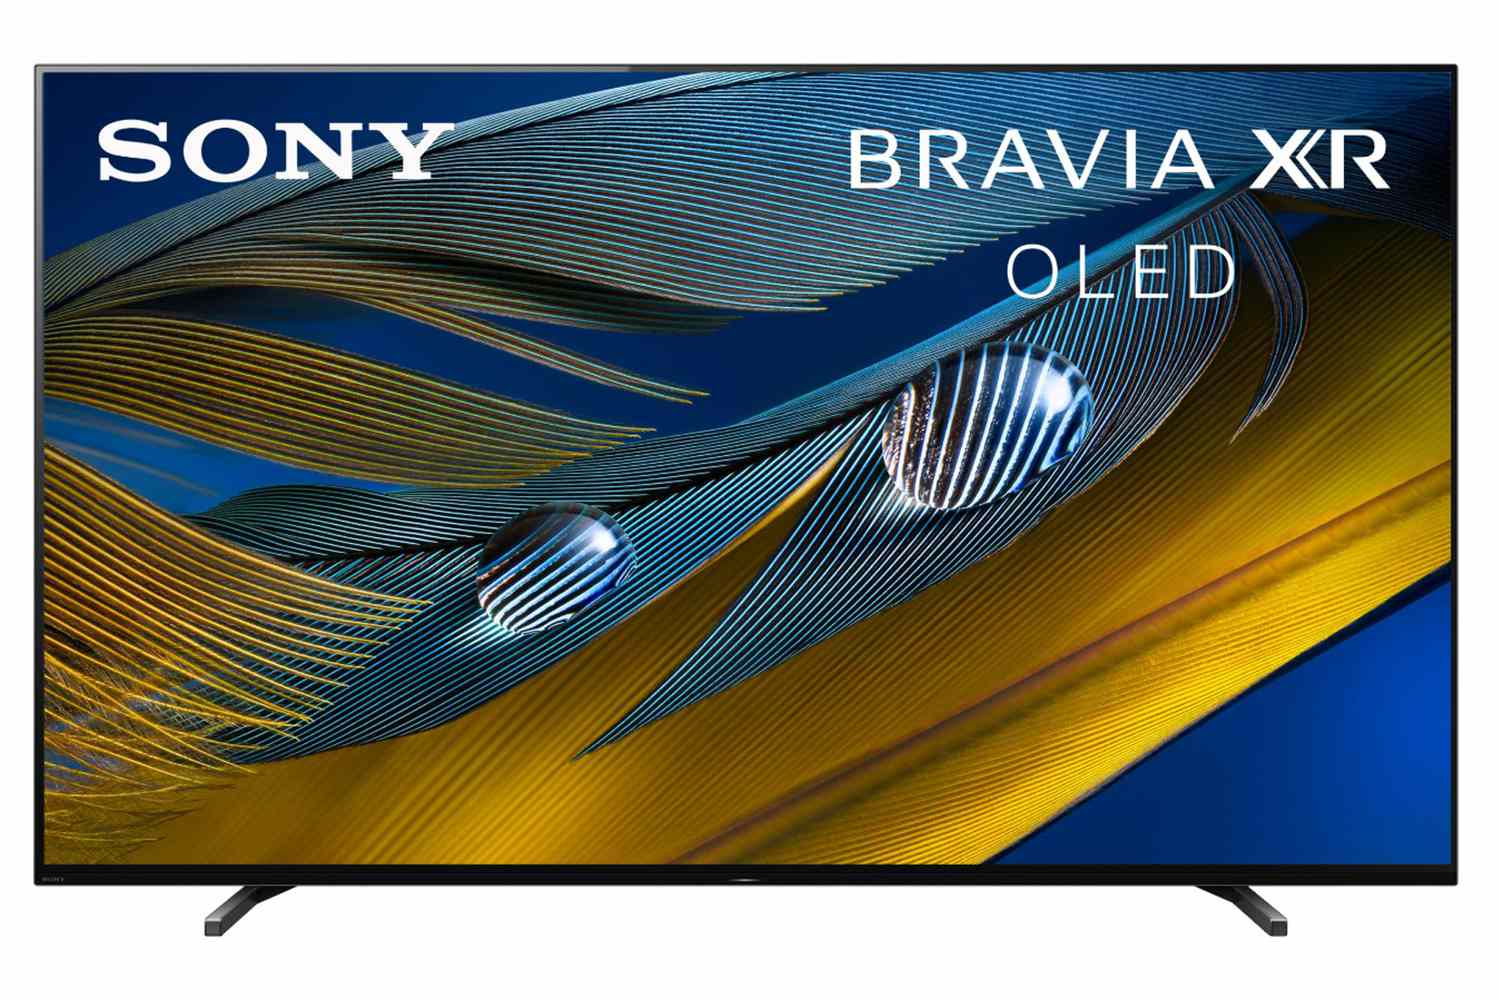 Sony - 55" Class BRAVIA XR A80J Series OLED 4K UHD Smart Google TV